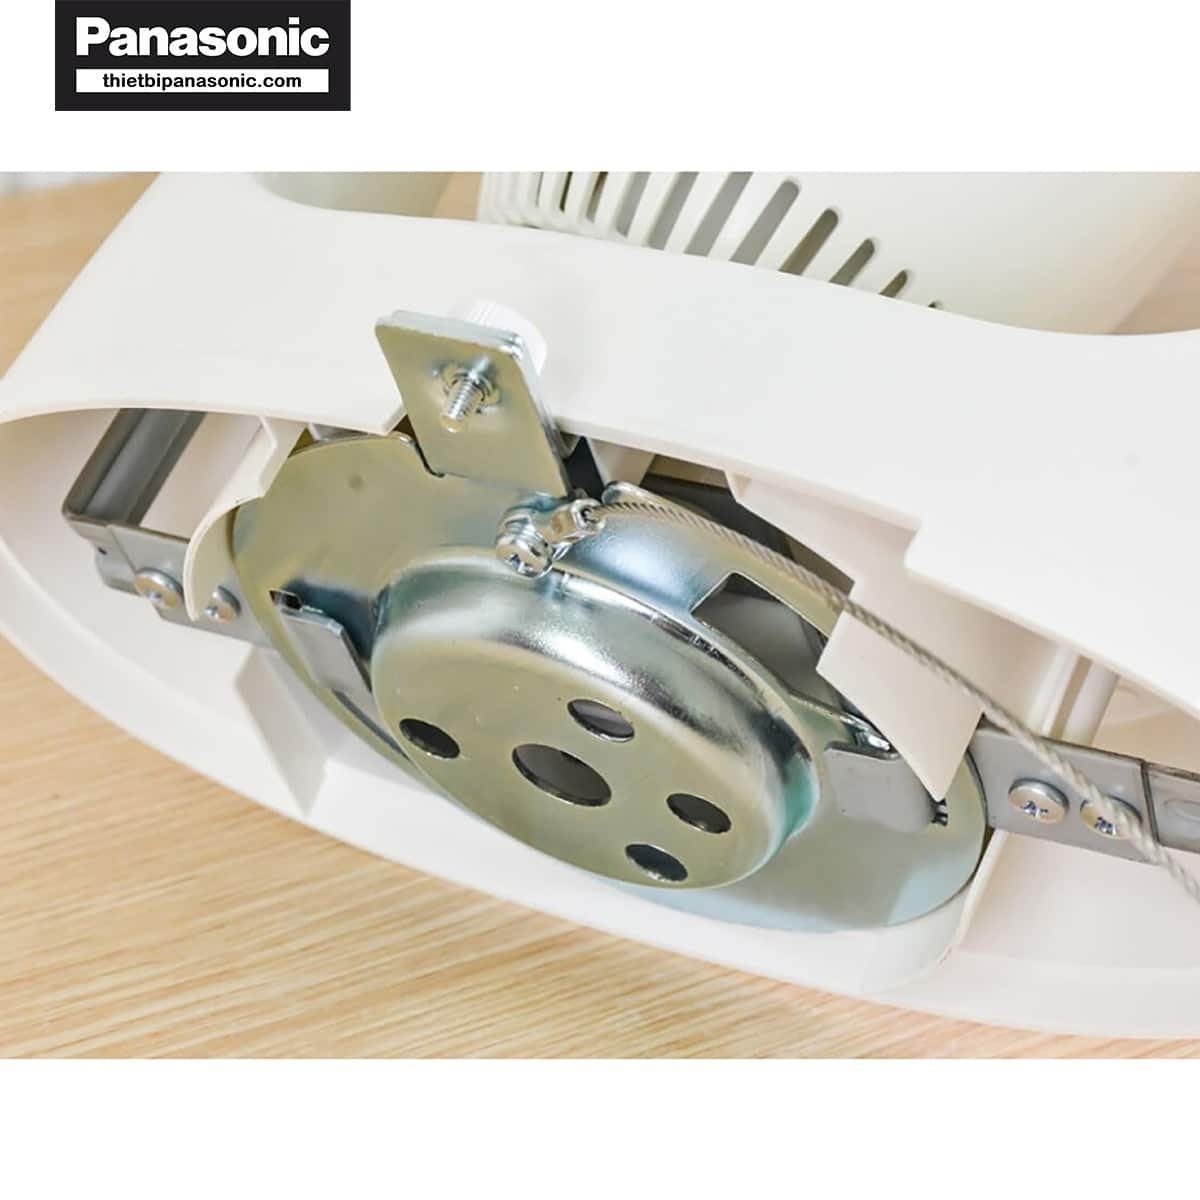 Động cơ của Quạt trần đảo Panasonic F-409QGO được làm hoàn toàn từ dây đồng chất lượng cao